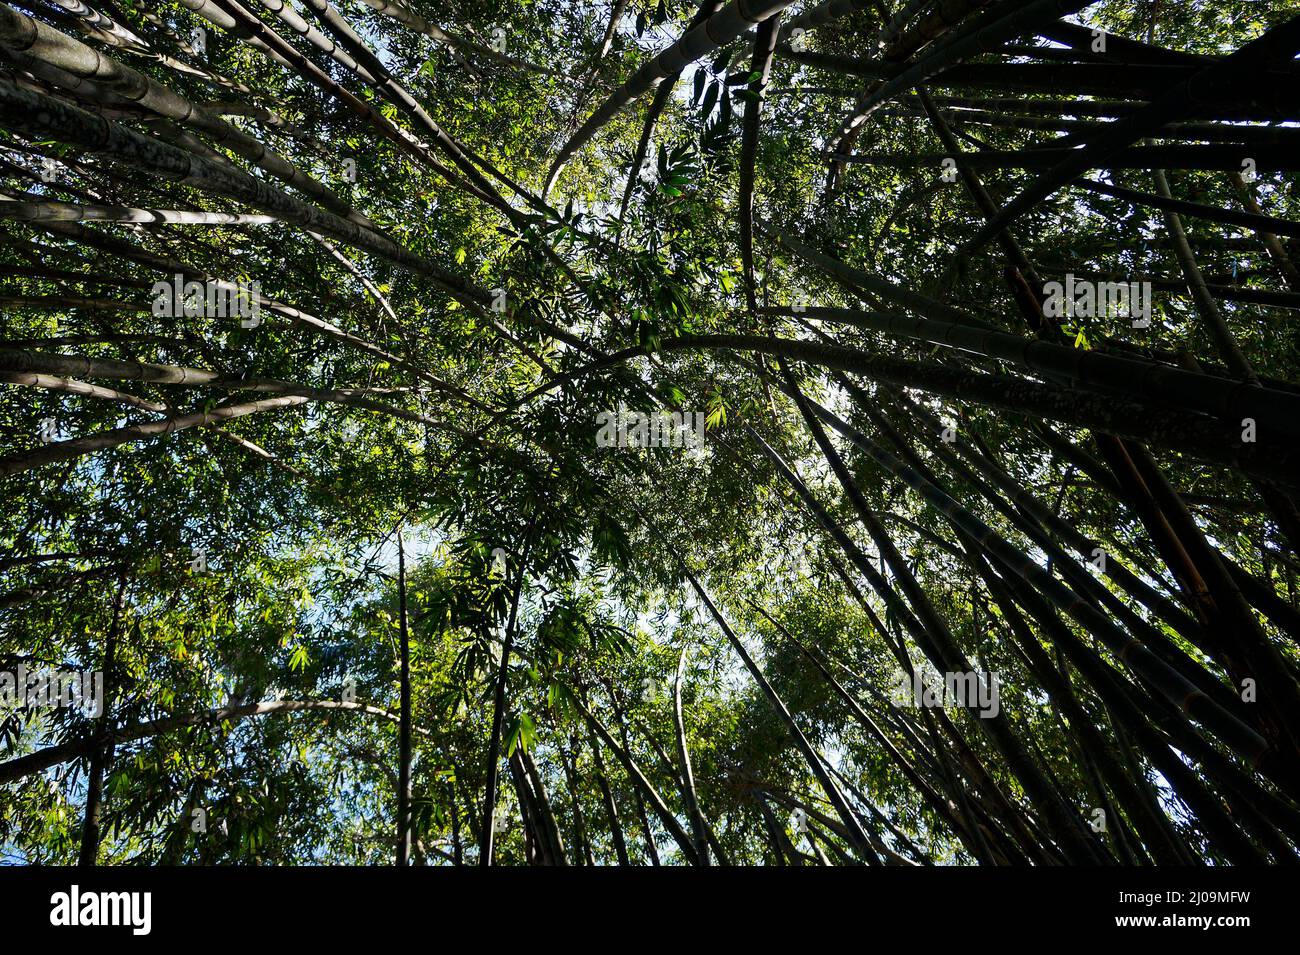 Giant bamboo or dragon bamboo forest (Dendrocalamus giganteus), Rio Stock Photo